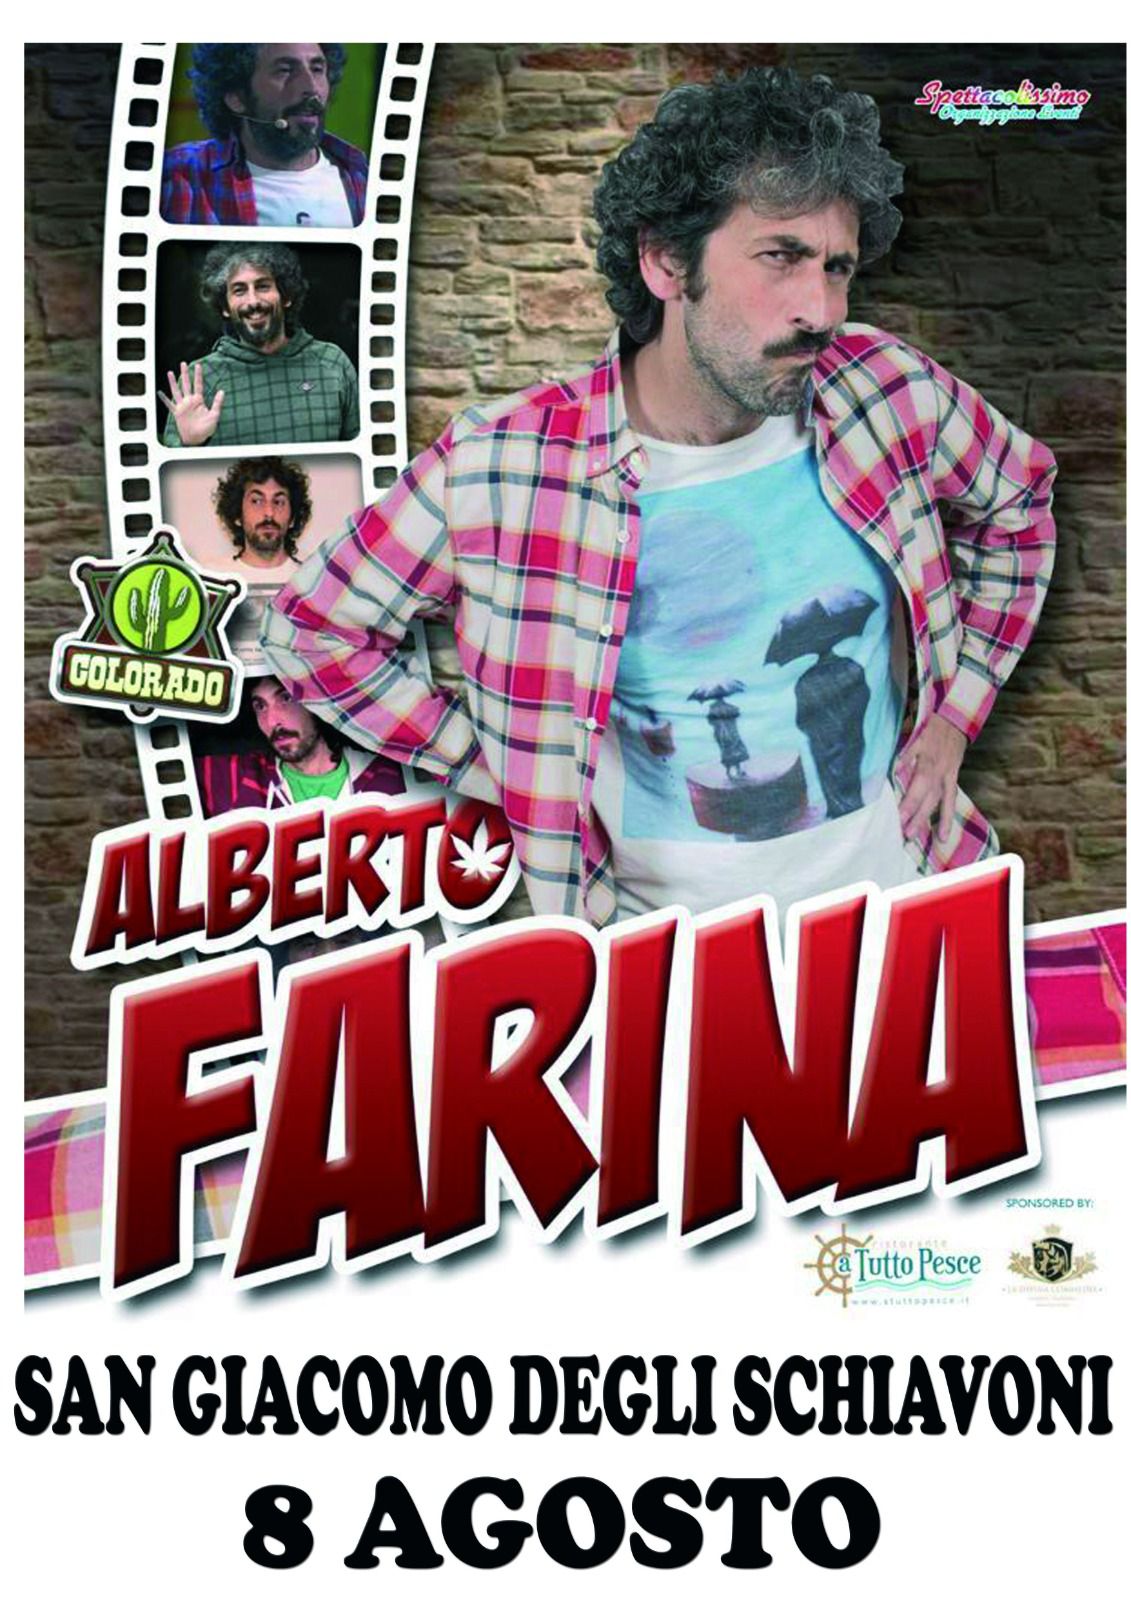 ALBERTO FARINA SHOW